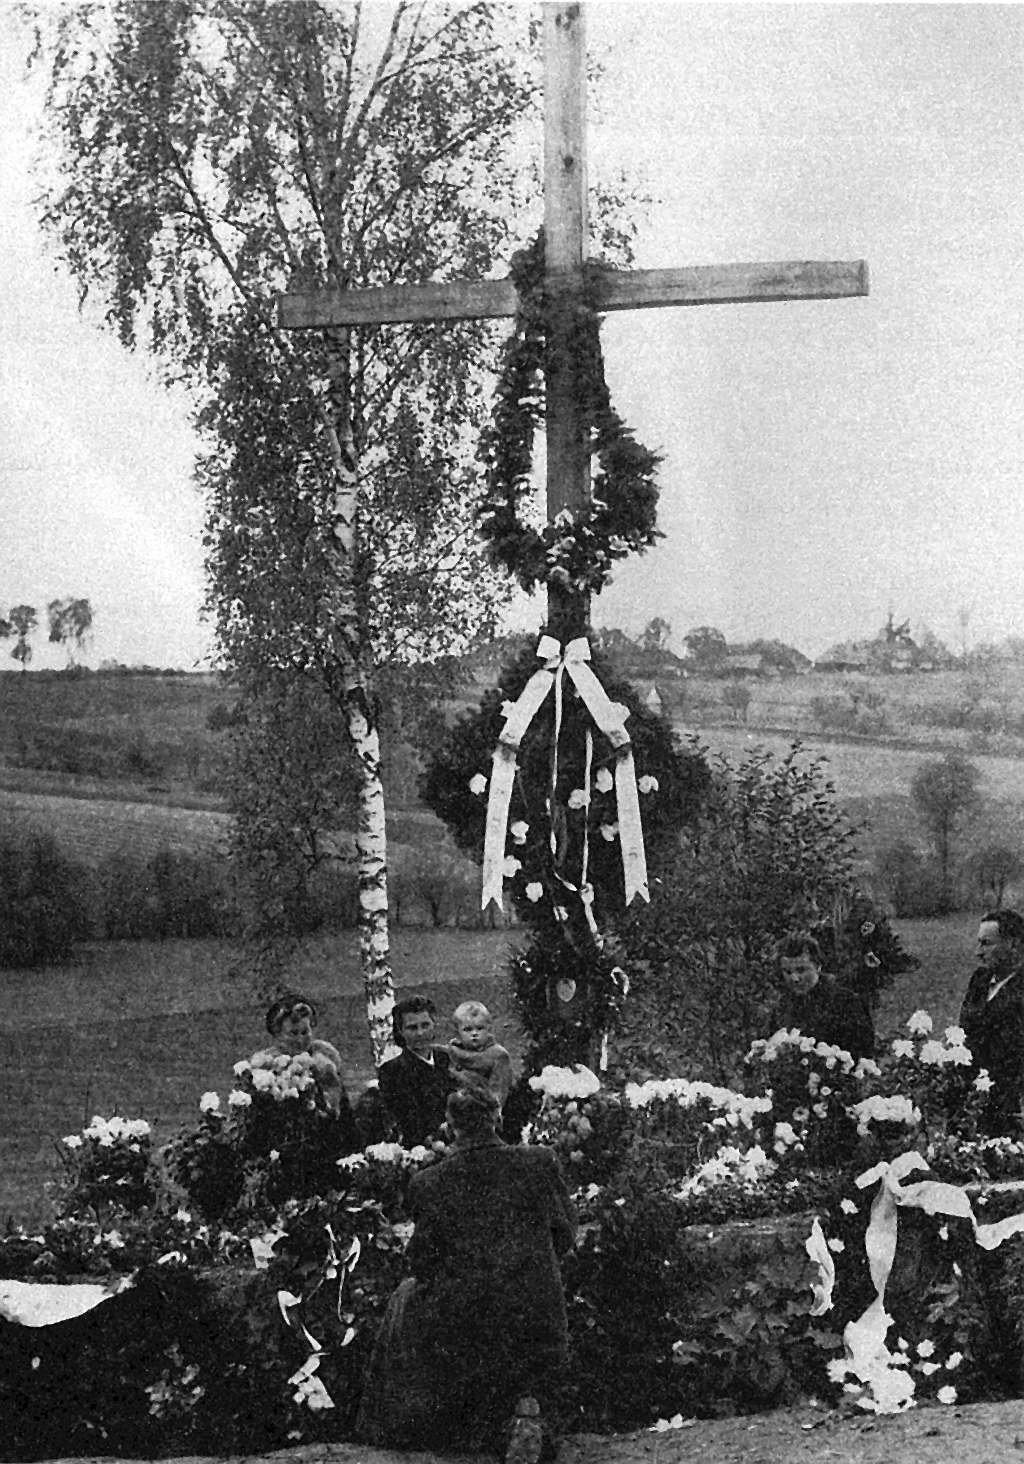 Krzyż dębowy, którym zastąpiono krzyż pierwotny, brzozowy w nocy 31 sierpnia/1 września 1944 r w 5. rocznicę wybuchu wojny. Zmiany dokonali żołnierze AK.Zdj. S. Sasak, zb. Z. Wysocki